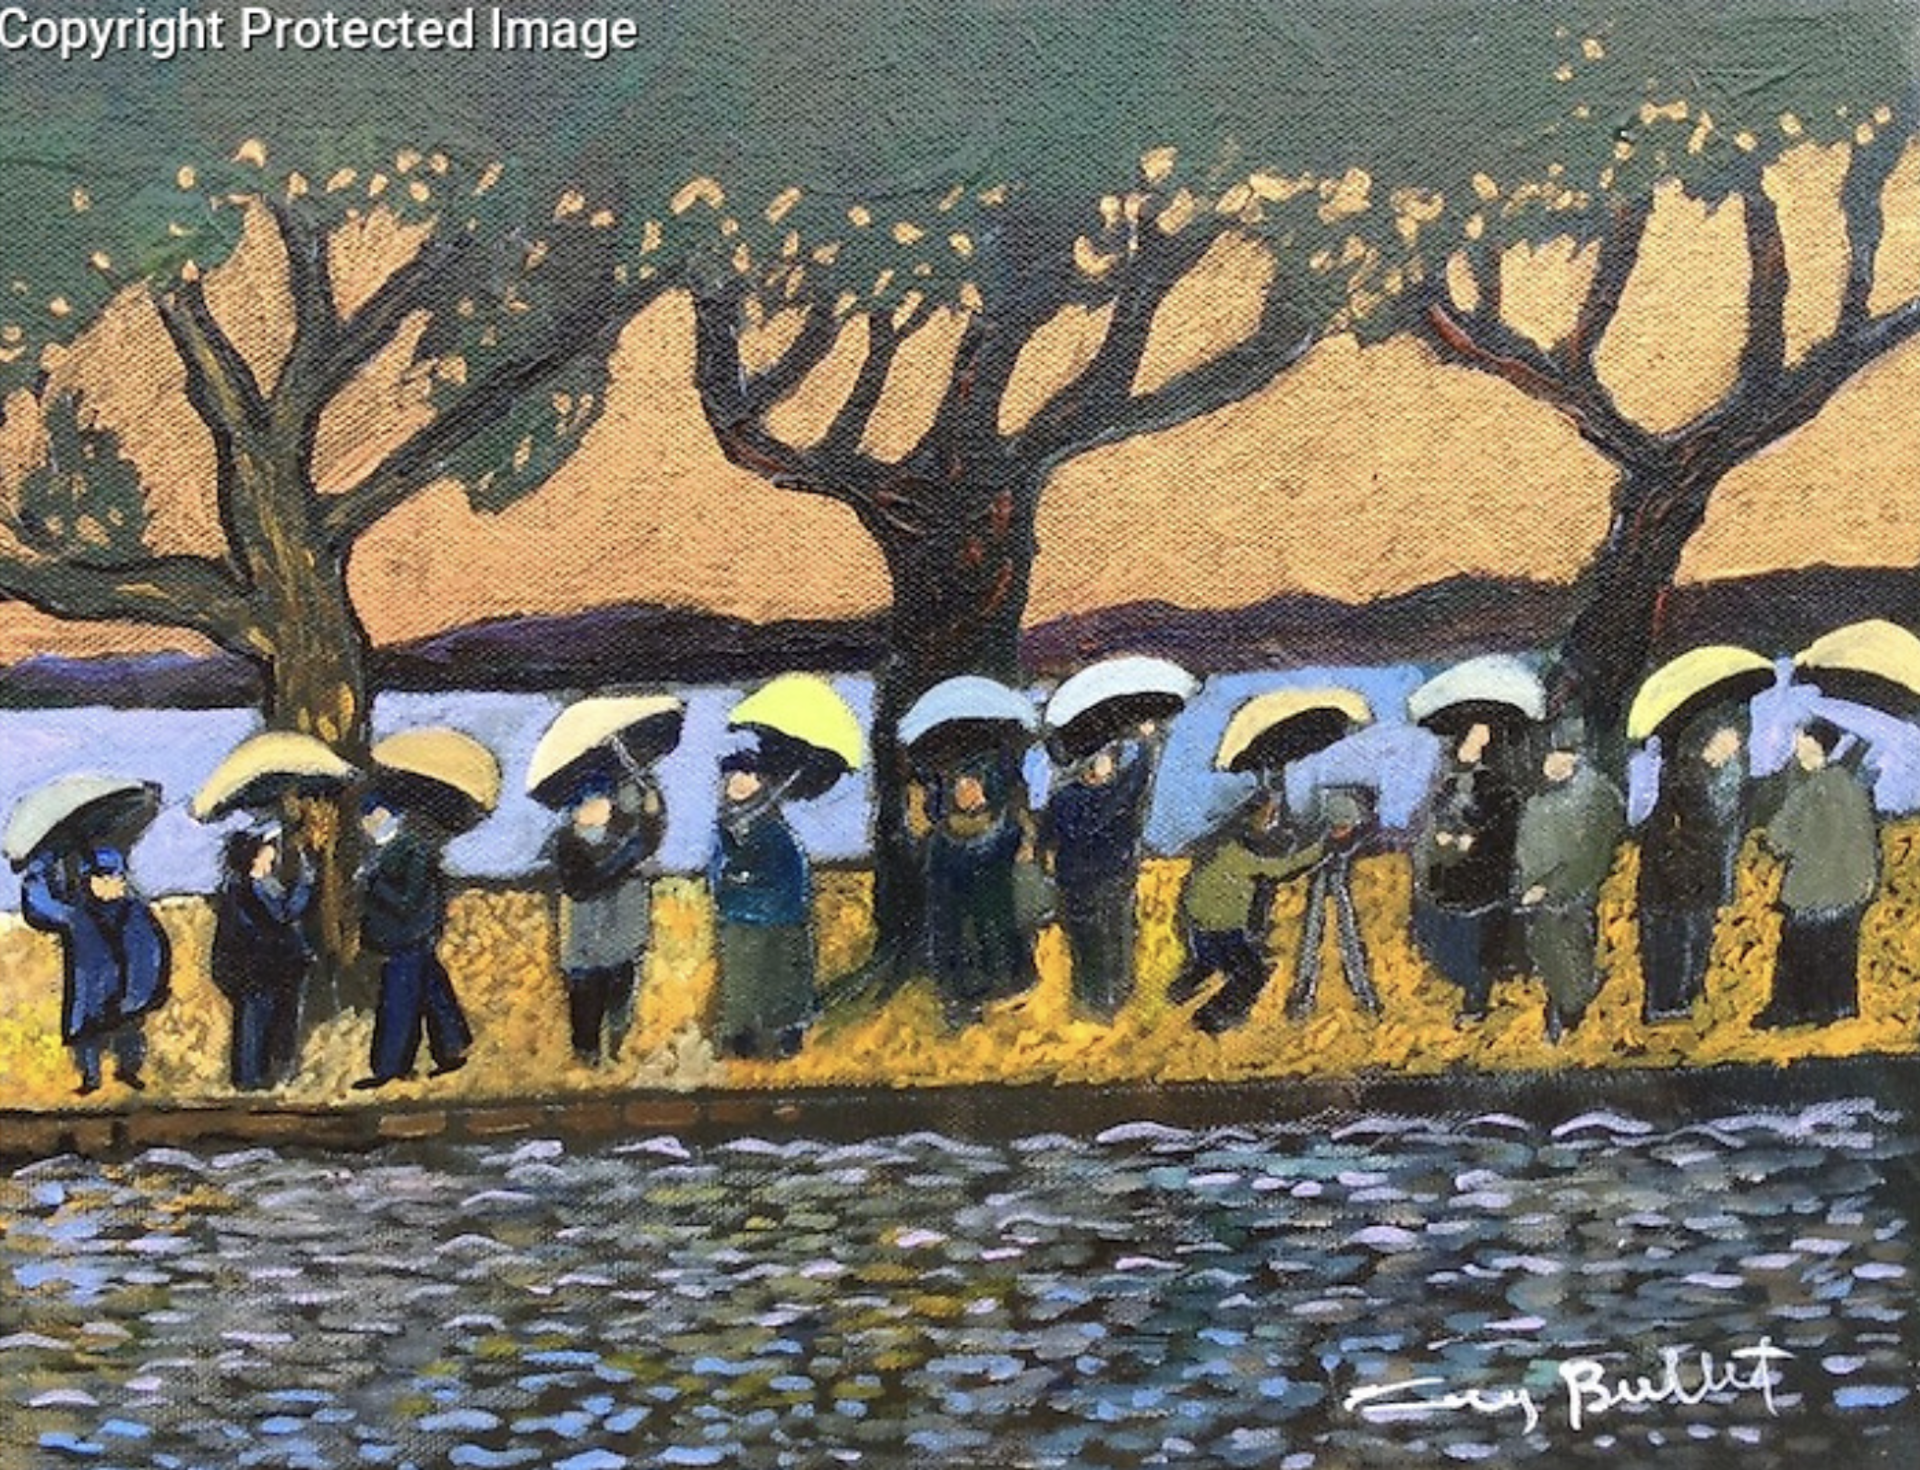 Umbrella of Hangzhou by Guy Buffet